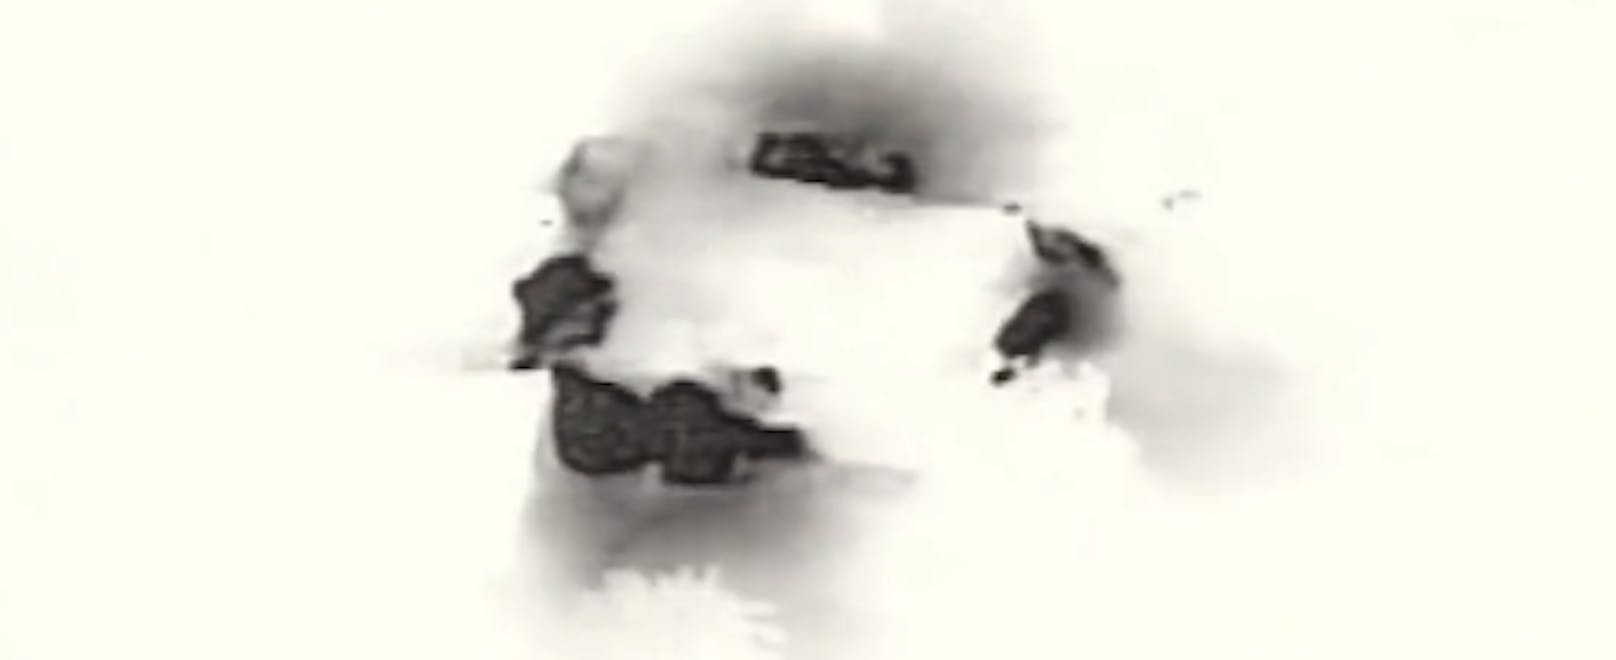 Die Armee veröffentlichte auf X auch ein Video des Angriffs.